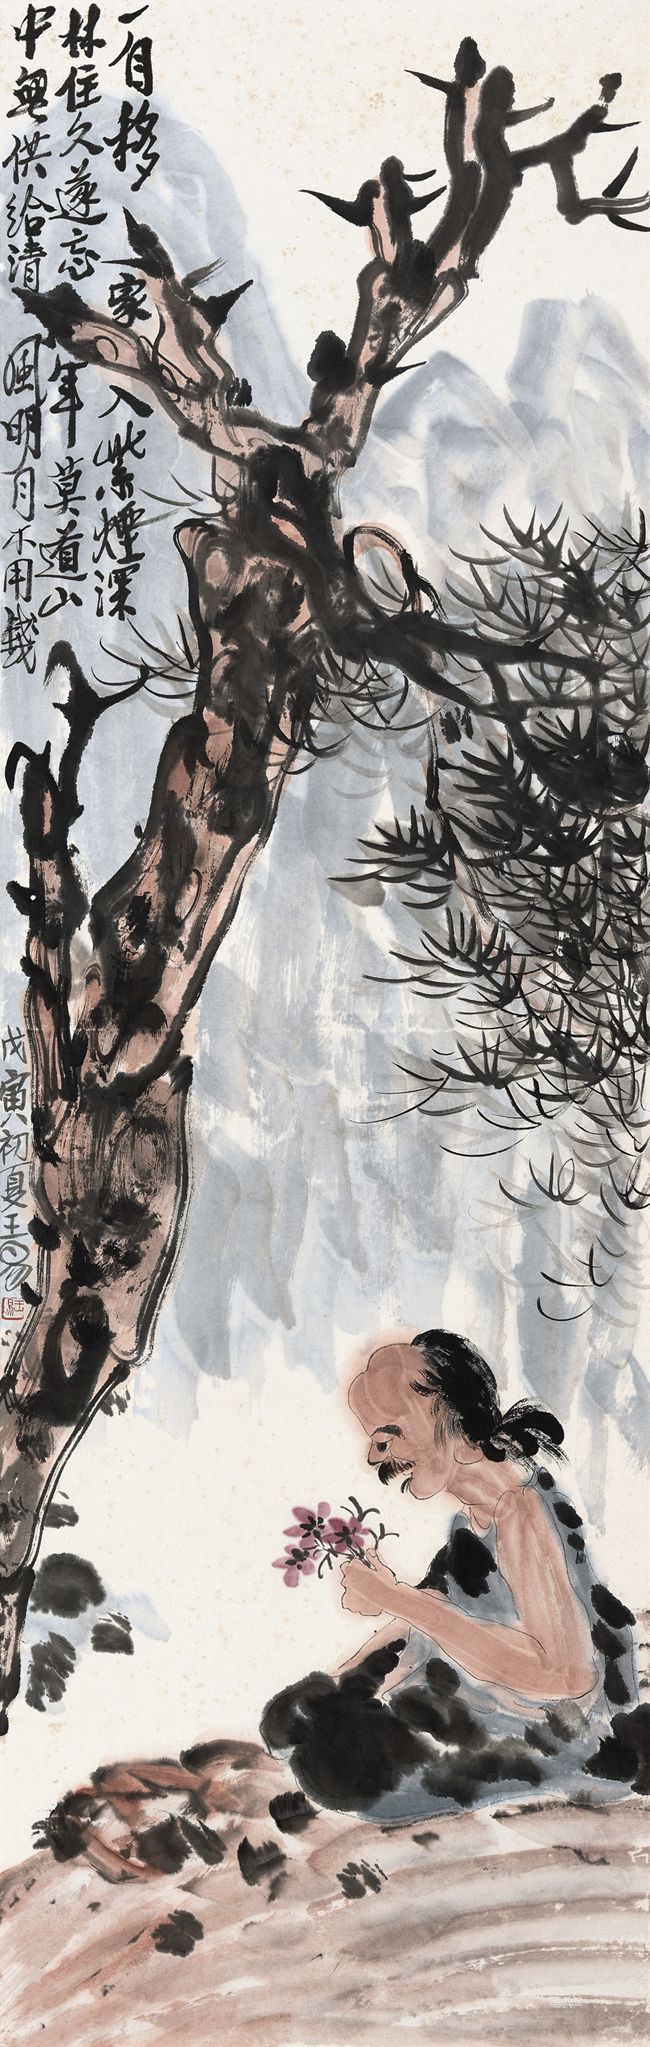 1998 《《清风明月不用钱》》 ——中国美术馆藏139X45cm